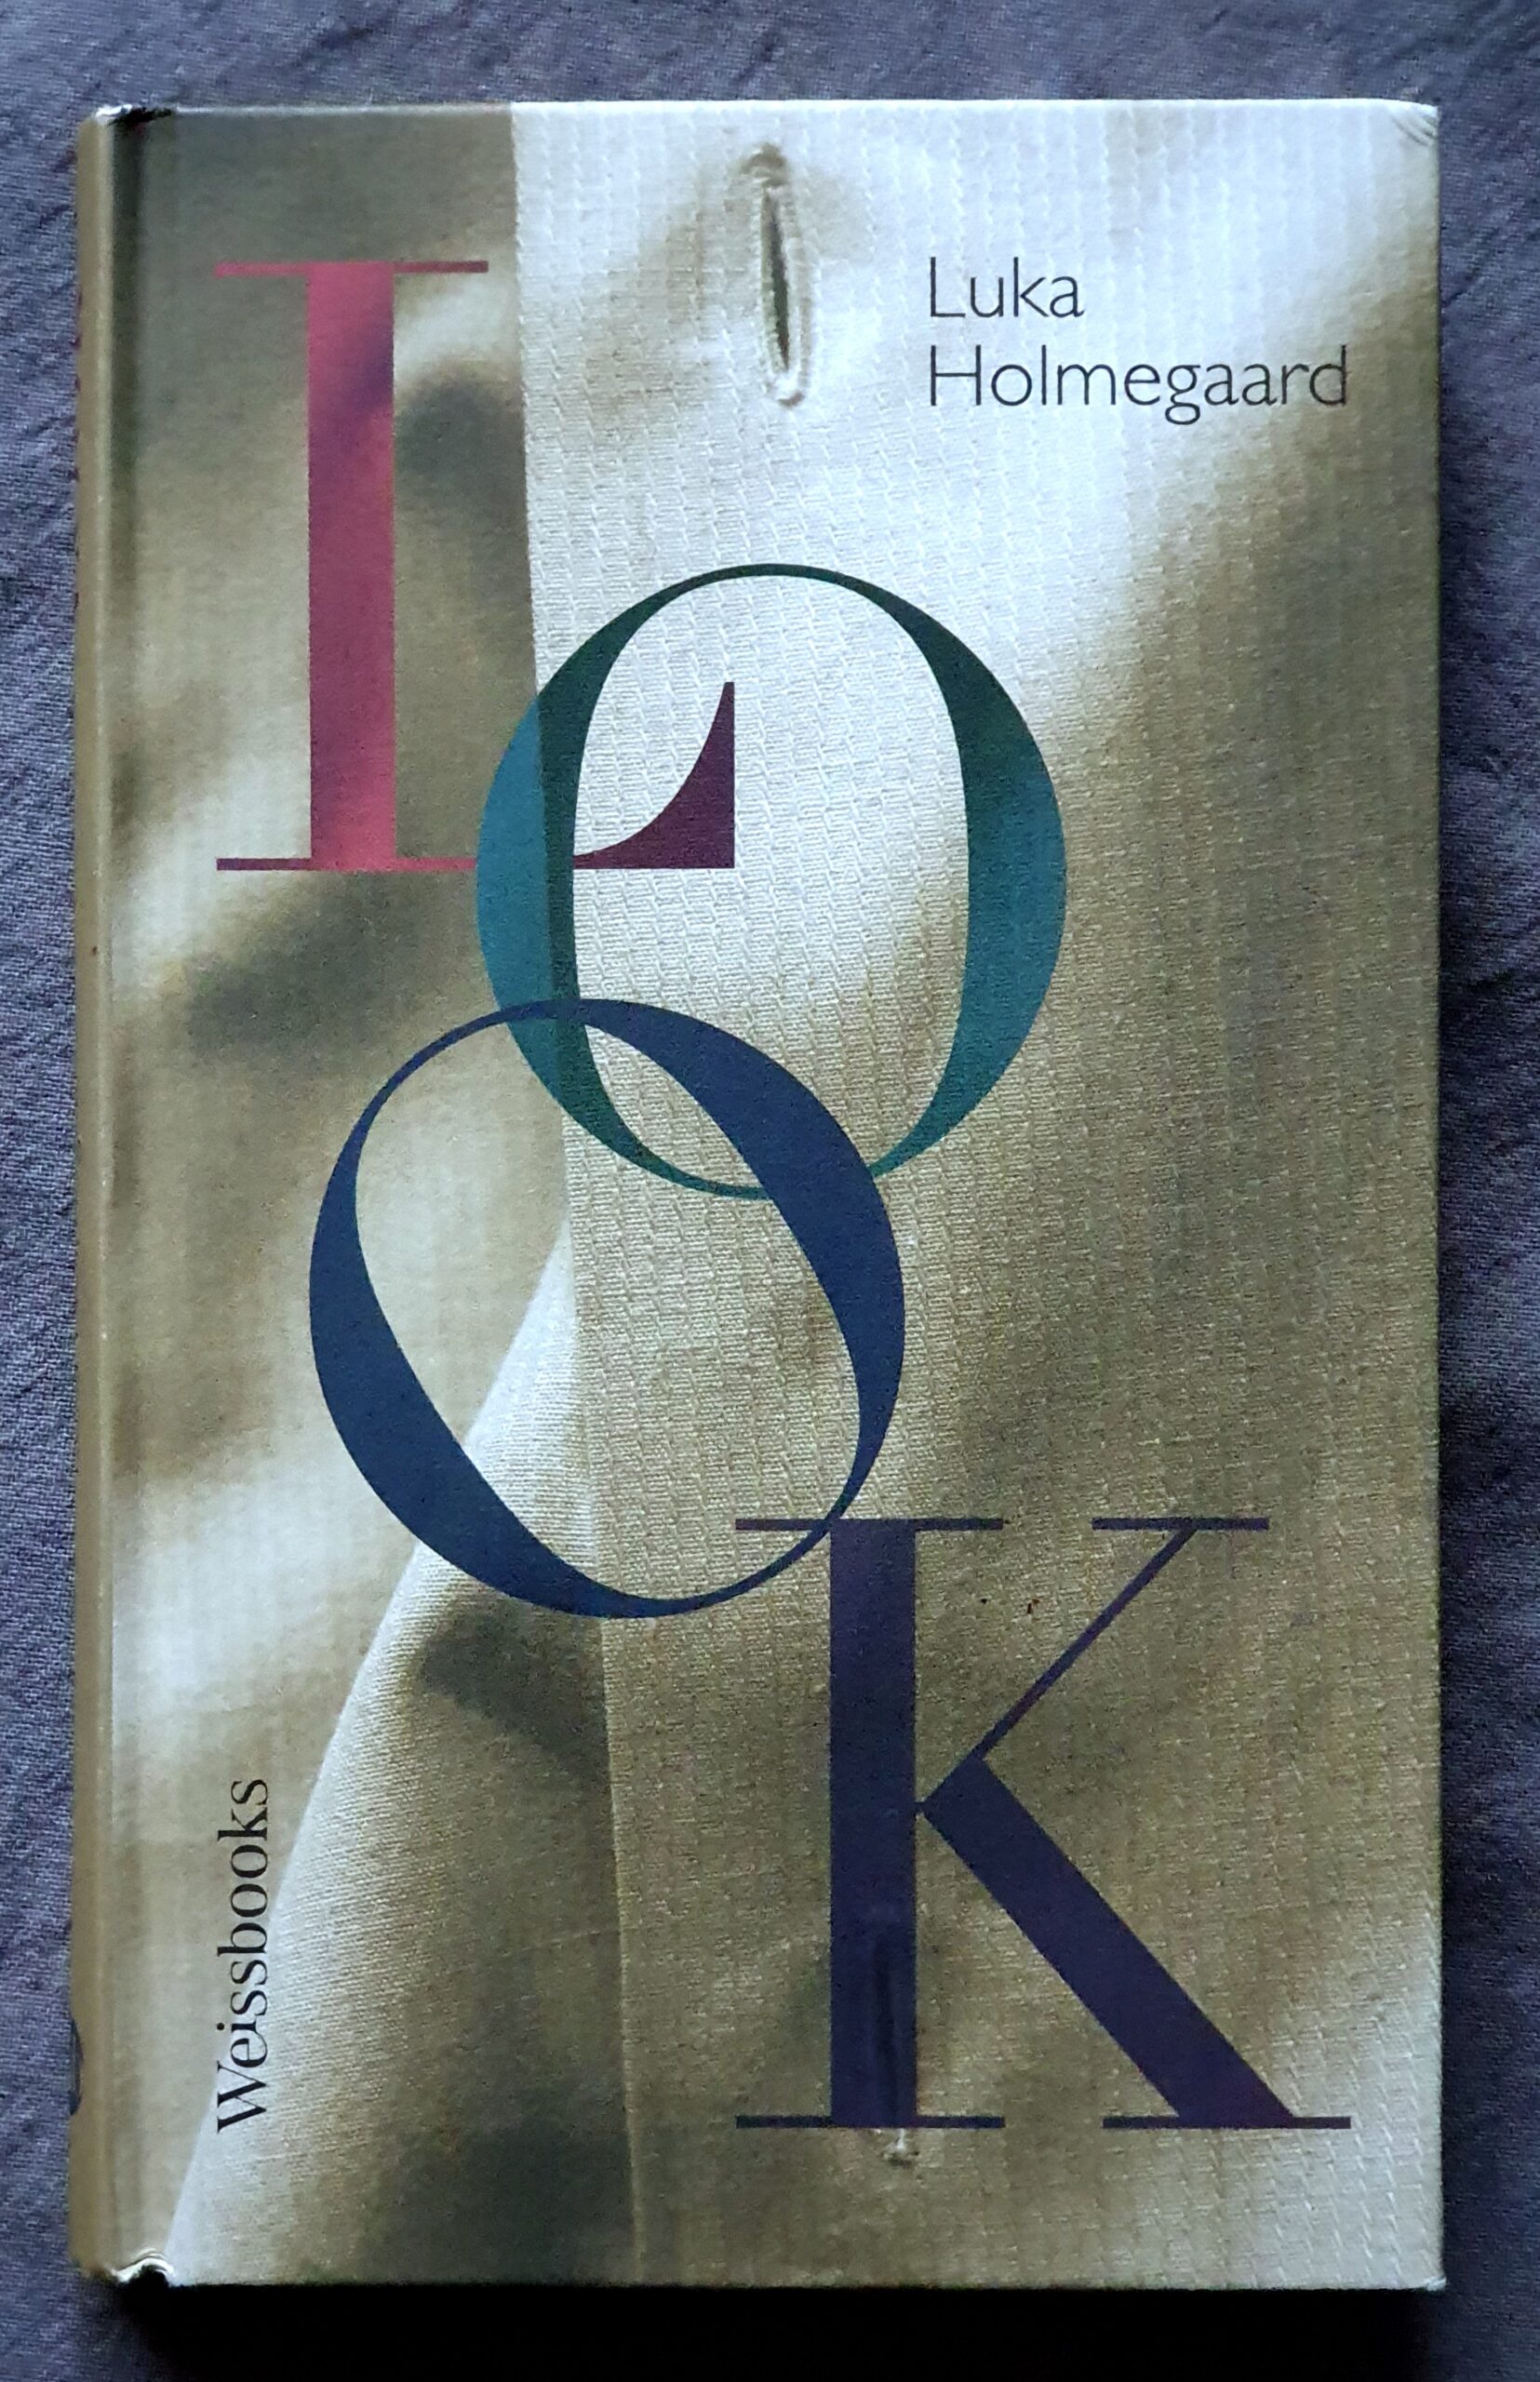 Foto des Buchcovers von 'Look', von Luka Holmegaard, bei Weissbooks. Die vier Buchstaben des Titel sehr groß in pink, grün und zwei Blautönen übereinander, im Hintergrund der Stoff eines Hemdes mit Knopflöchern. Der Name oben rechts, und der Verlag unten links.